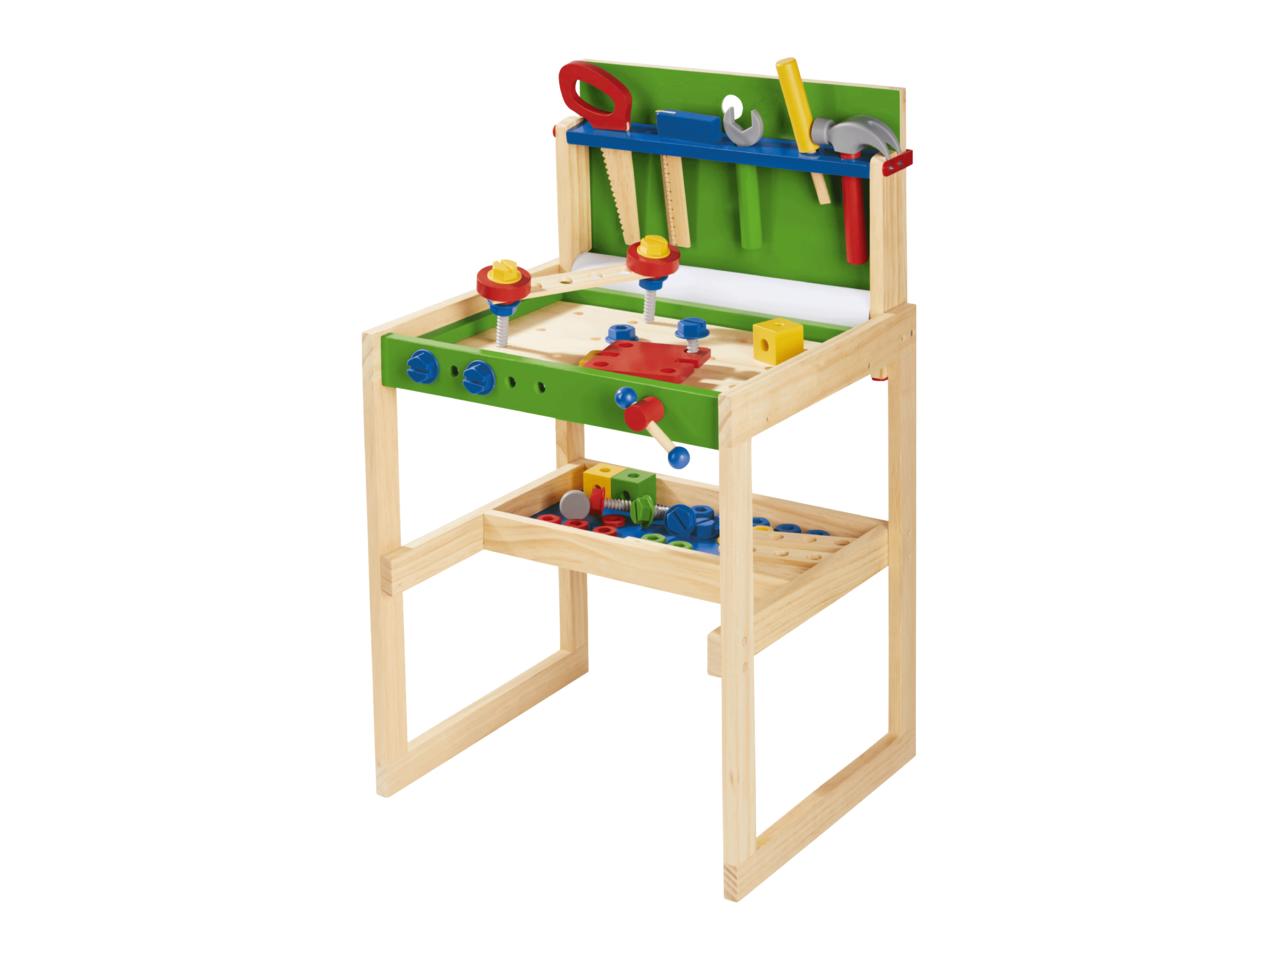 PLAYTIVE JUNIOR(R) Toy Workbench